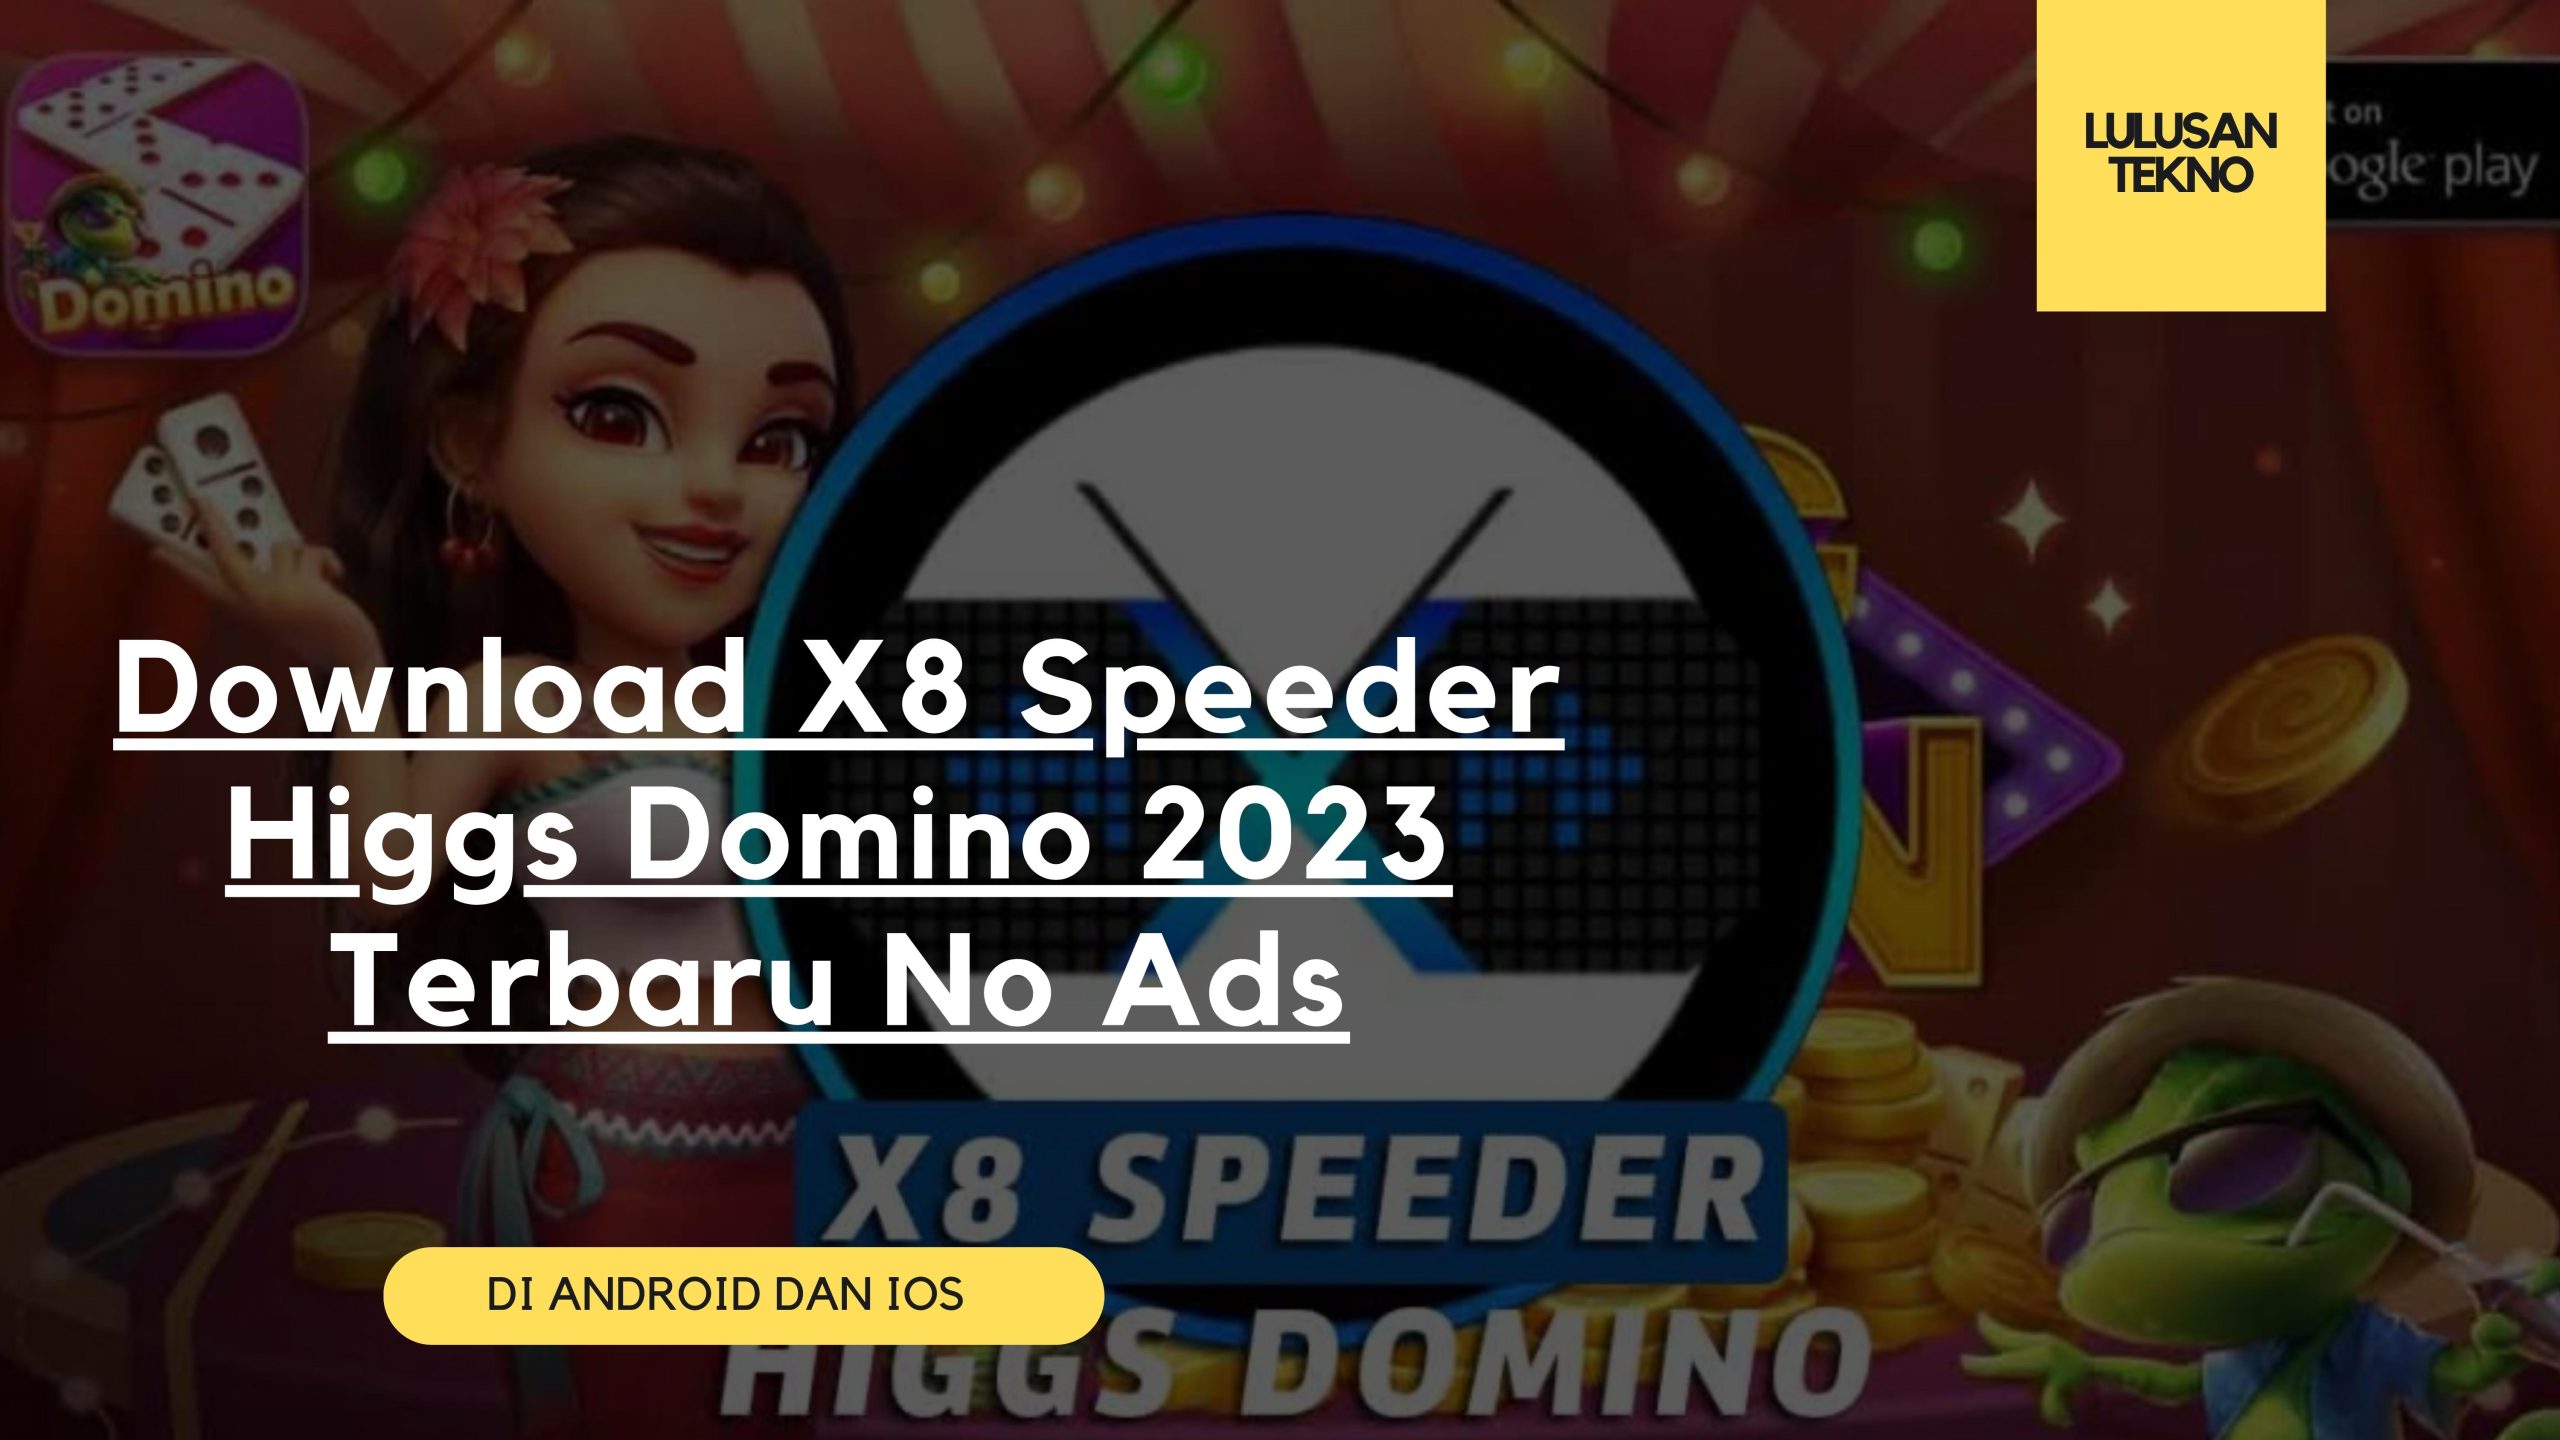 Download X8 Speeder Higgs Domino 2023 Terbaru No Ads